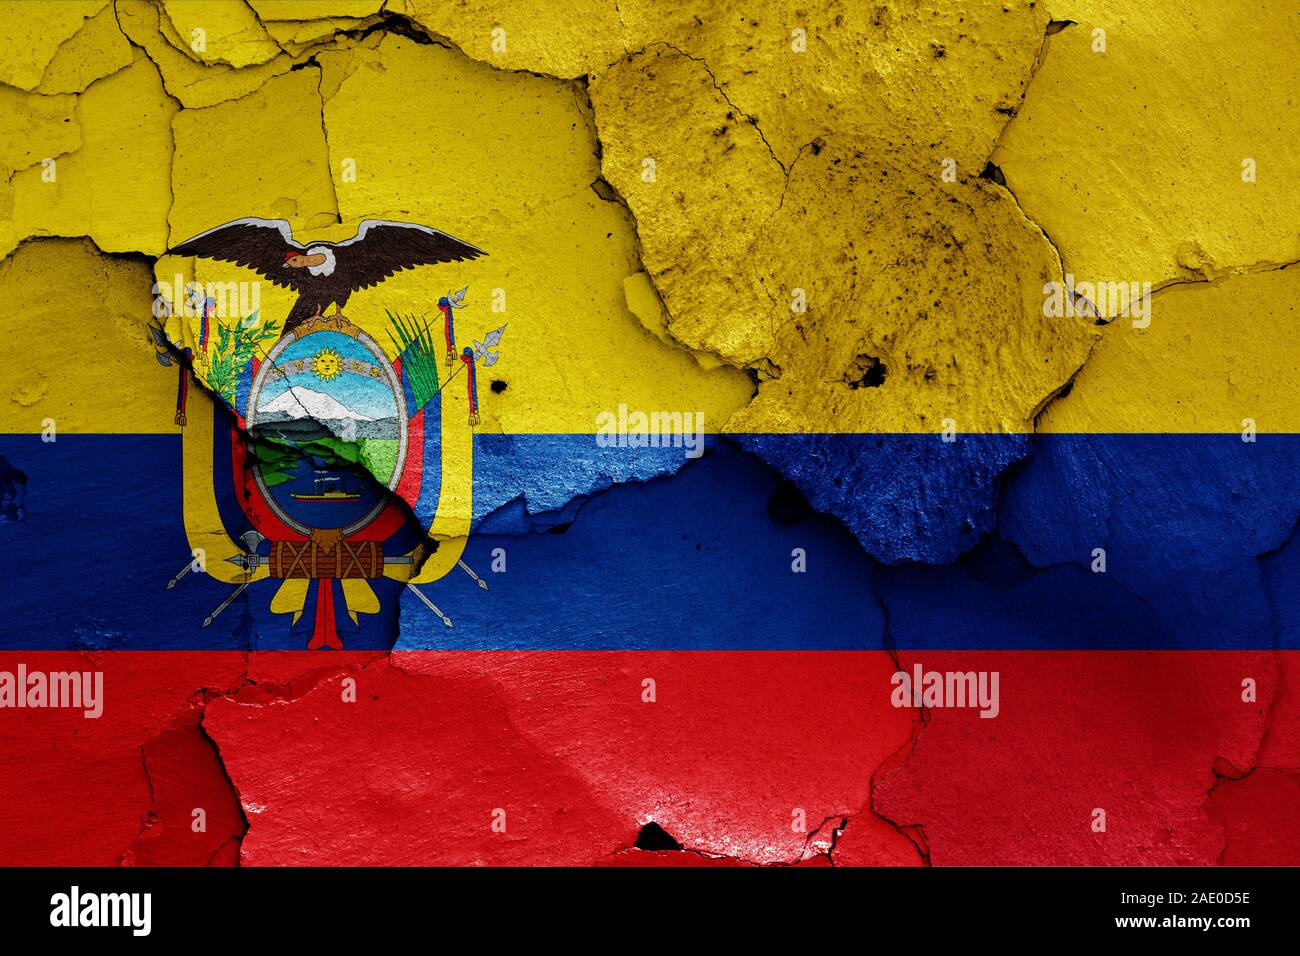 Bandera colombia ecuador fotografías e imágenes de alta resolución - Alamy